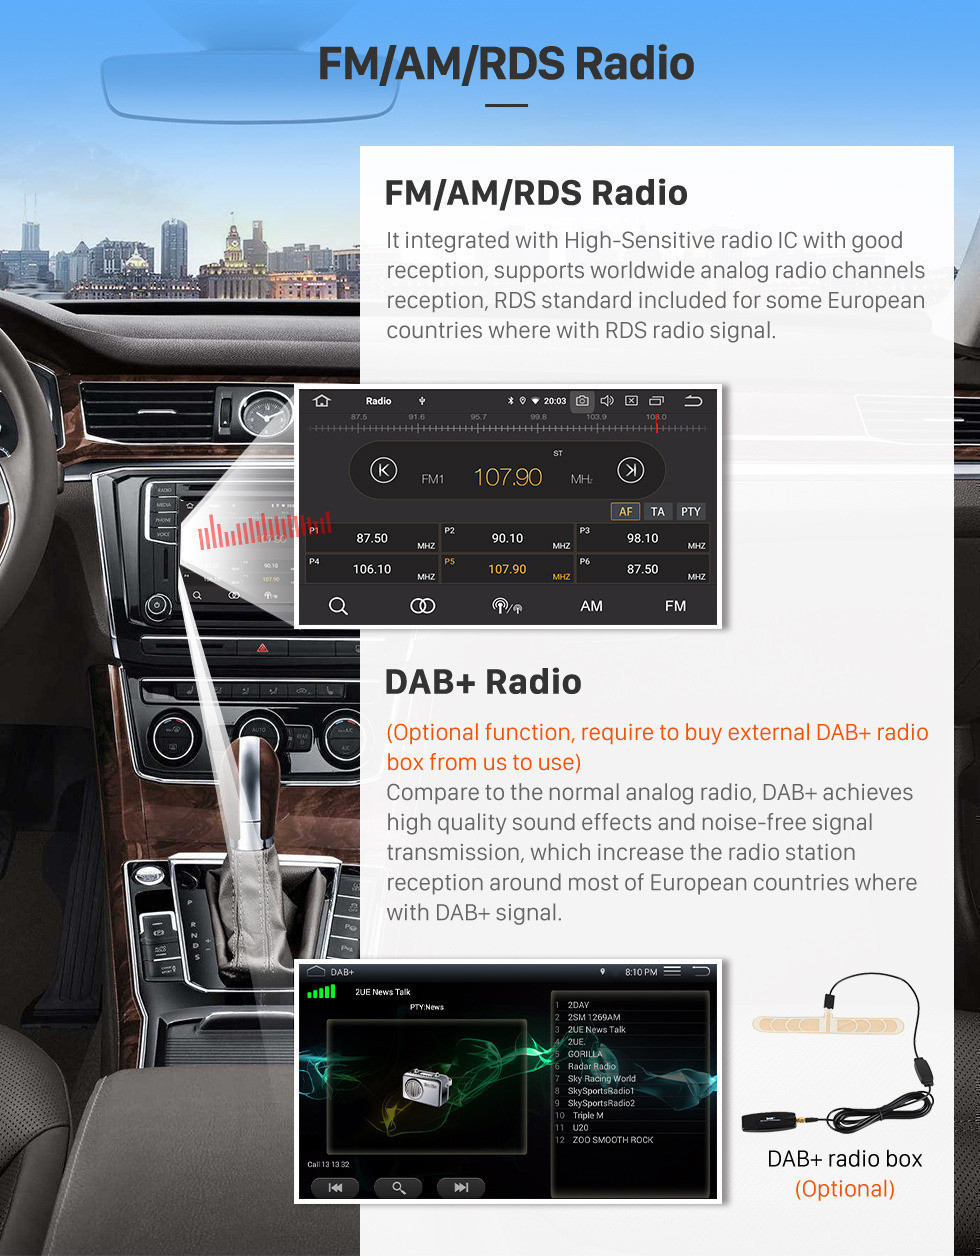 Seicane 9 pouces Android 12.0 HD 1024 * 600 Écran tactile pour 2000-2015 VW Volkswagen Crafter Radio GPS Unité principale avec 3G WiFi Lecteur DVD Bluetooth Musique AUX Caméra de recul OBD2 Lien miroir